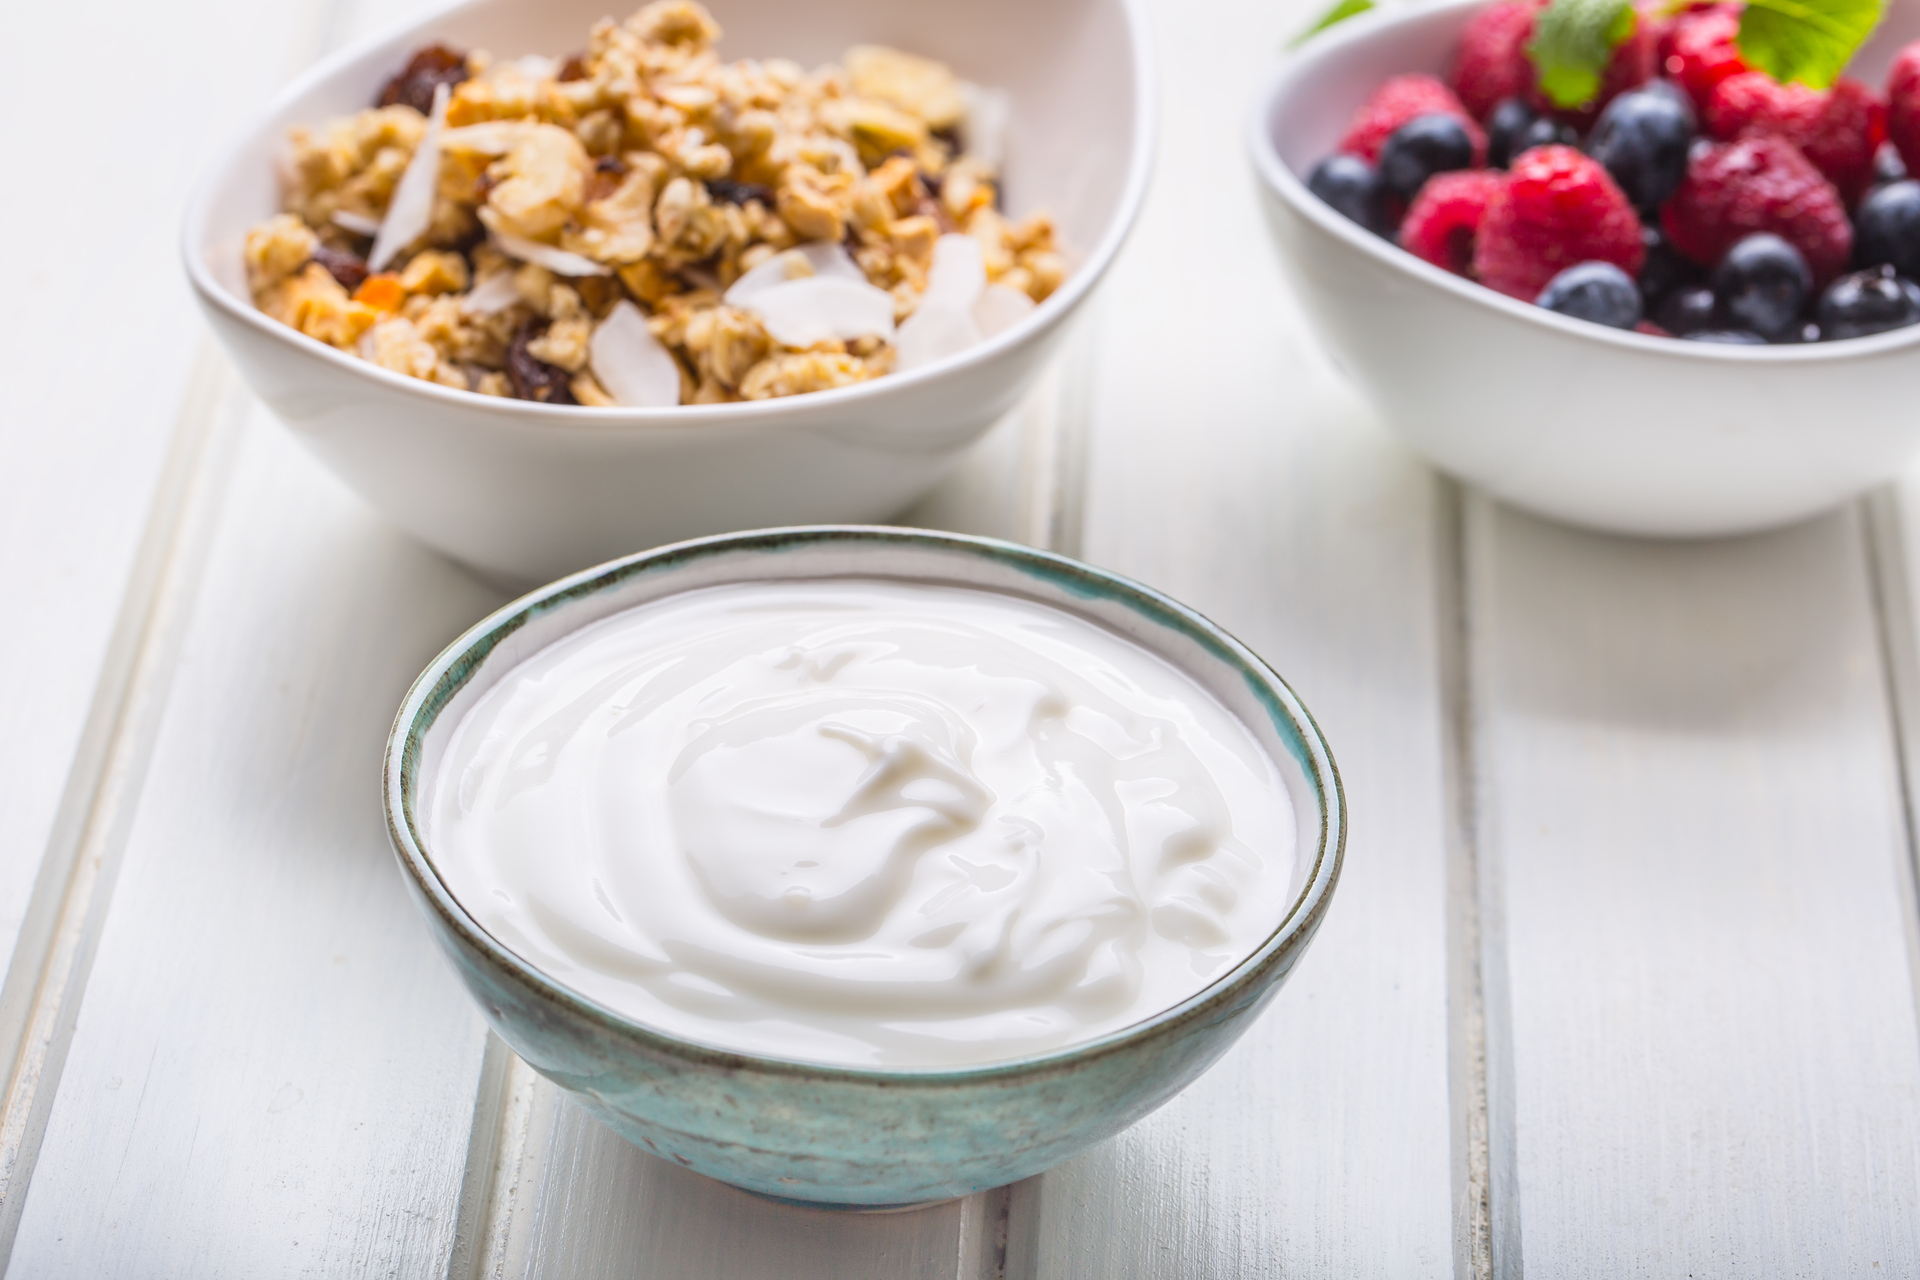 Na obrazku można zobaczyć miseczkę z pysznym jogurtem naturalnym. Jego gładka i kremowa tekstura oraz biały kolor zachęcają do skosztowania. Jogurt naturalny jest nie tylko smaczny, ale też bogaty w białko i probiotyki, co czyni go zdrowym wyborem na codzienny posiłek